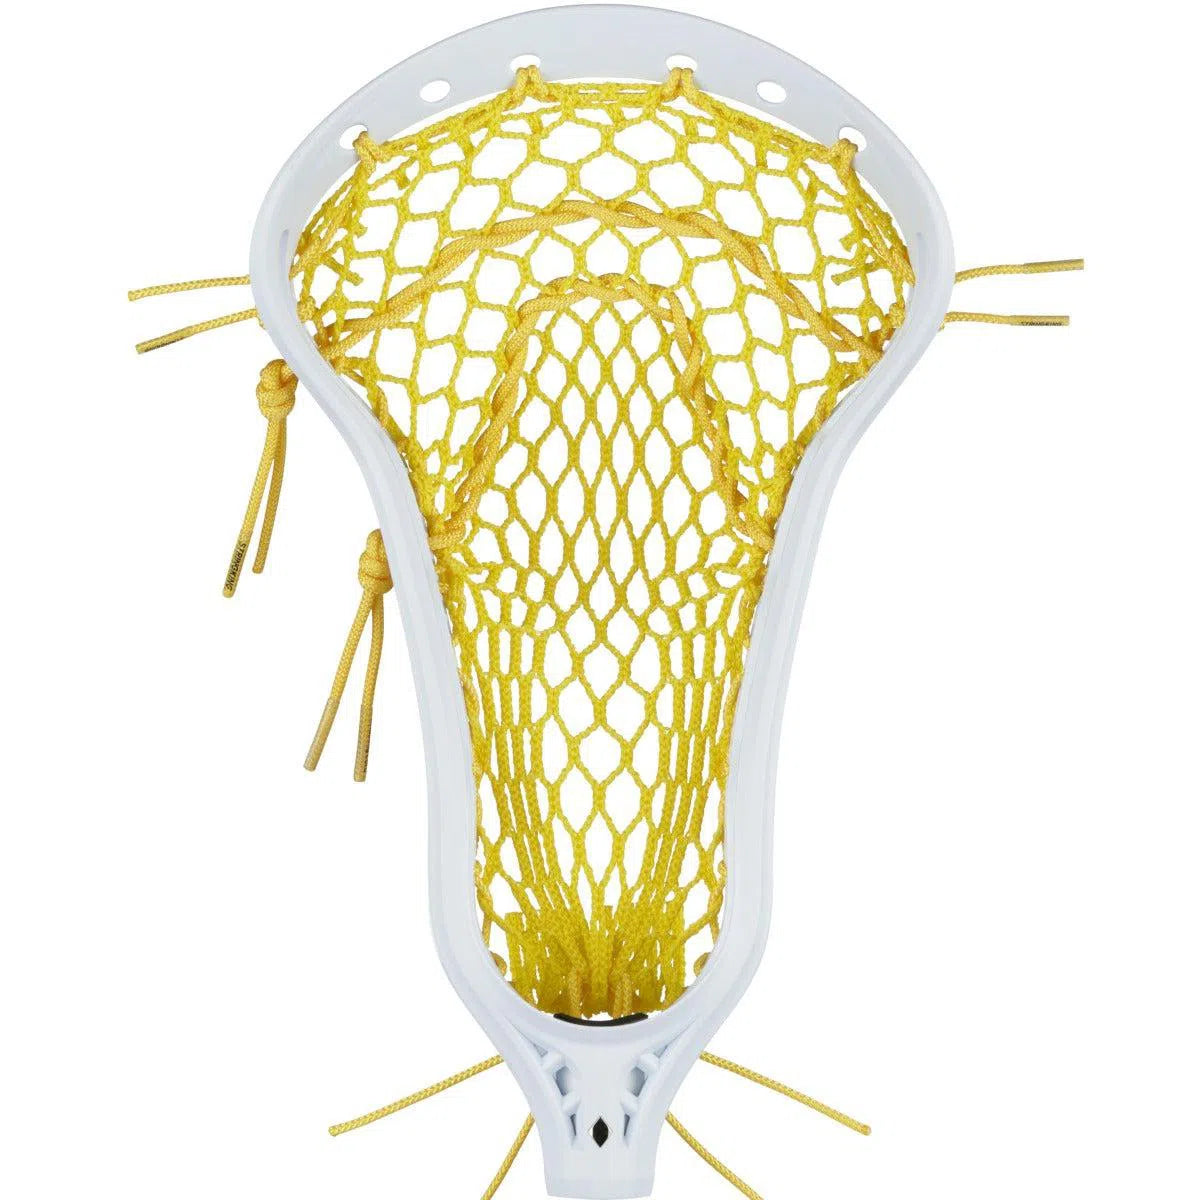 Stringking Mark 2 Offense Women's Lacrosse Head